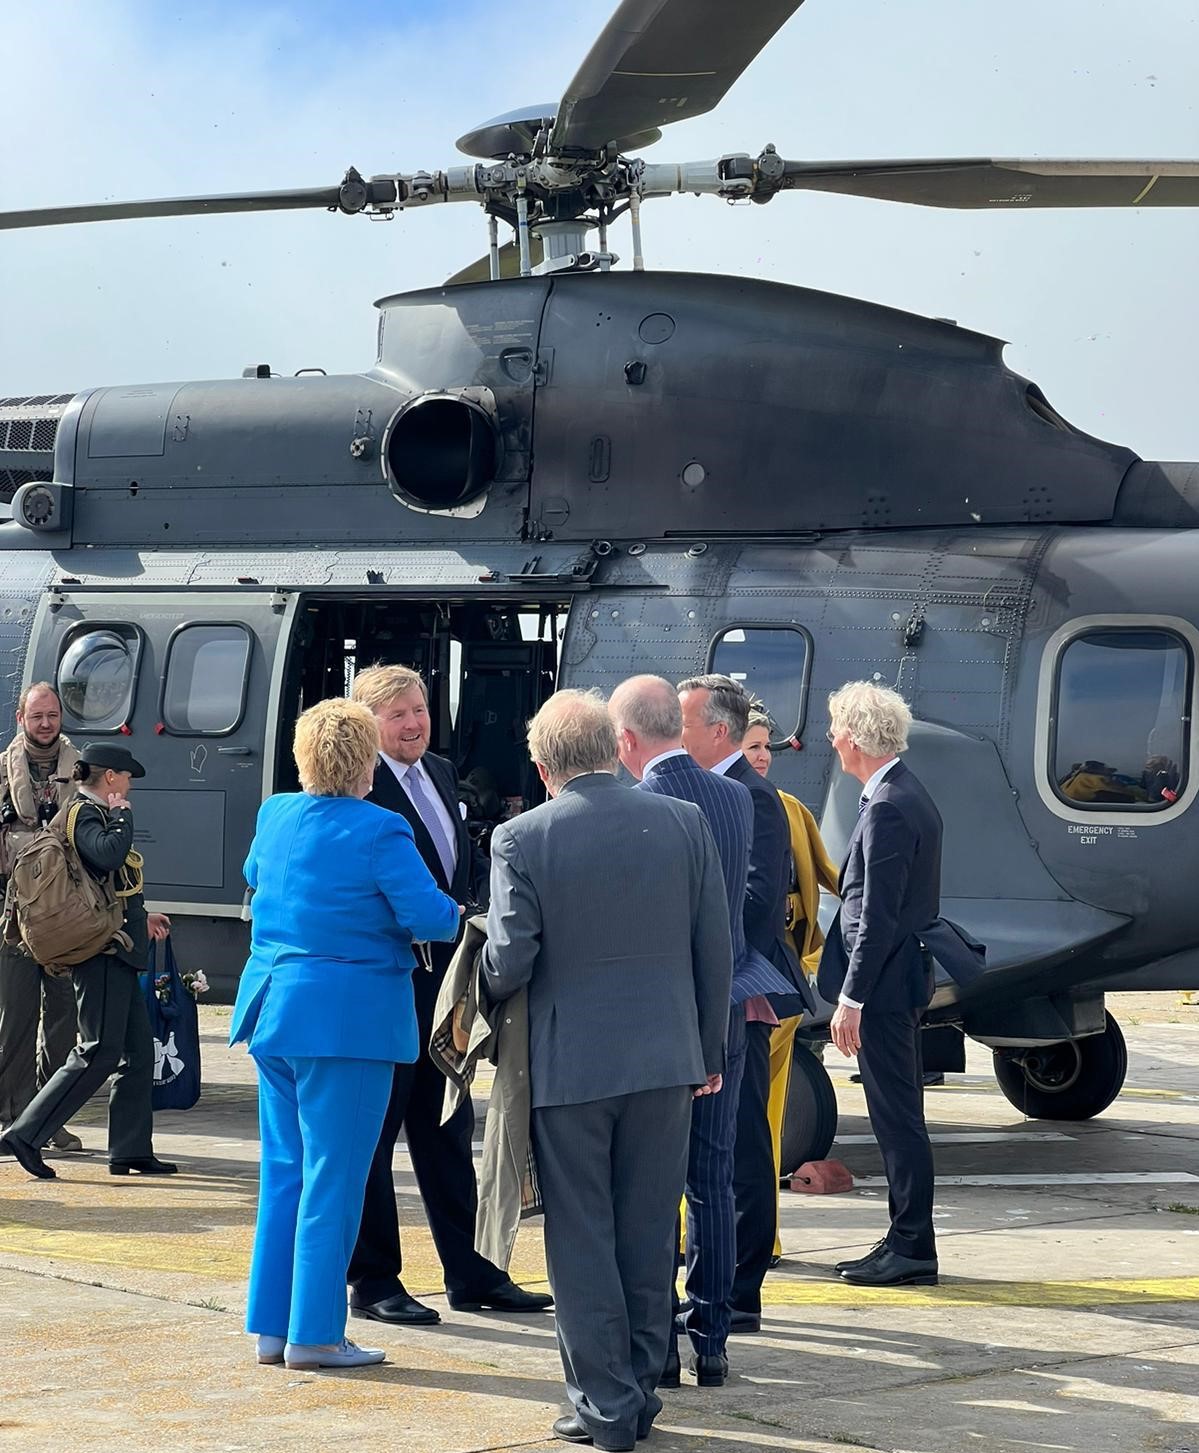 Koning en Koningin staan met meerdere mensen bij de helicopter